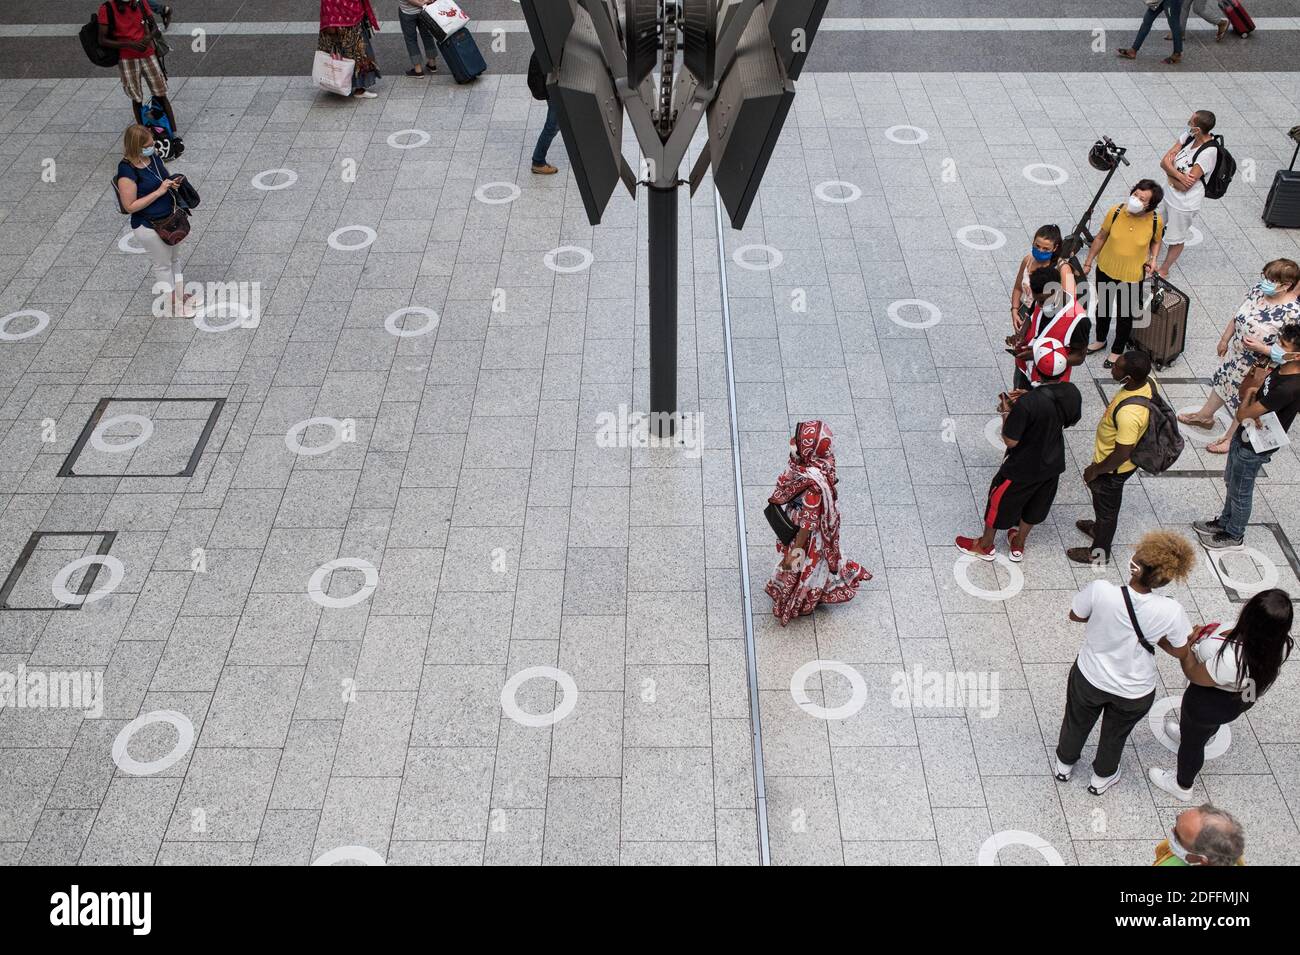 Les gens regardent le panneau de départ en respectant les distances sociales à la gare du Nord, à Paris, France, le 14 août 2020, pendant la pandémie du COVID-19 (nouveau coronavirus). Photo de Julie Sebadelha/ABACAPRESS.COM Banque D'Images